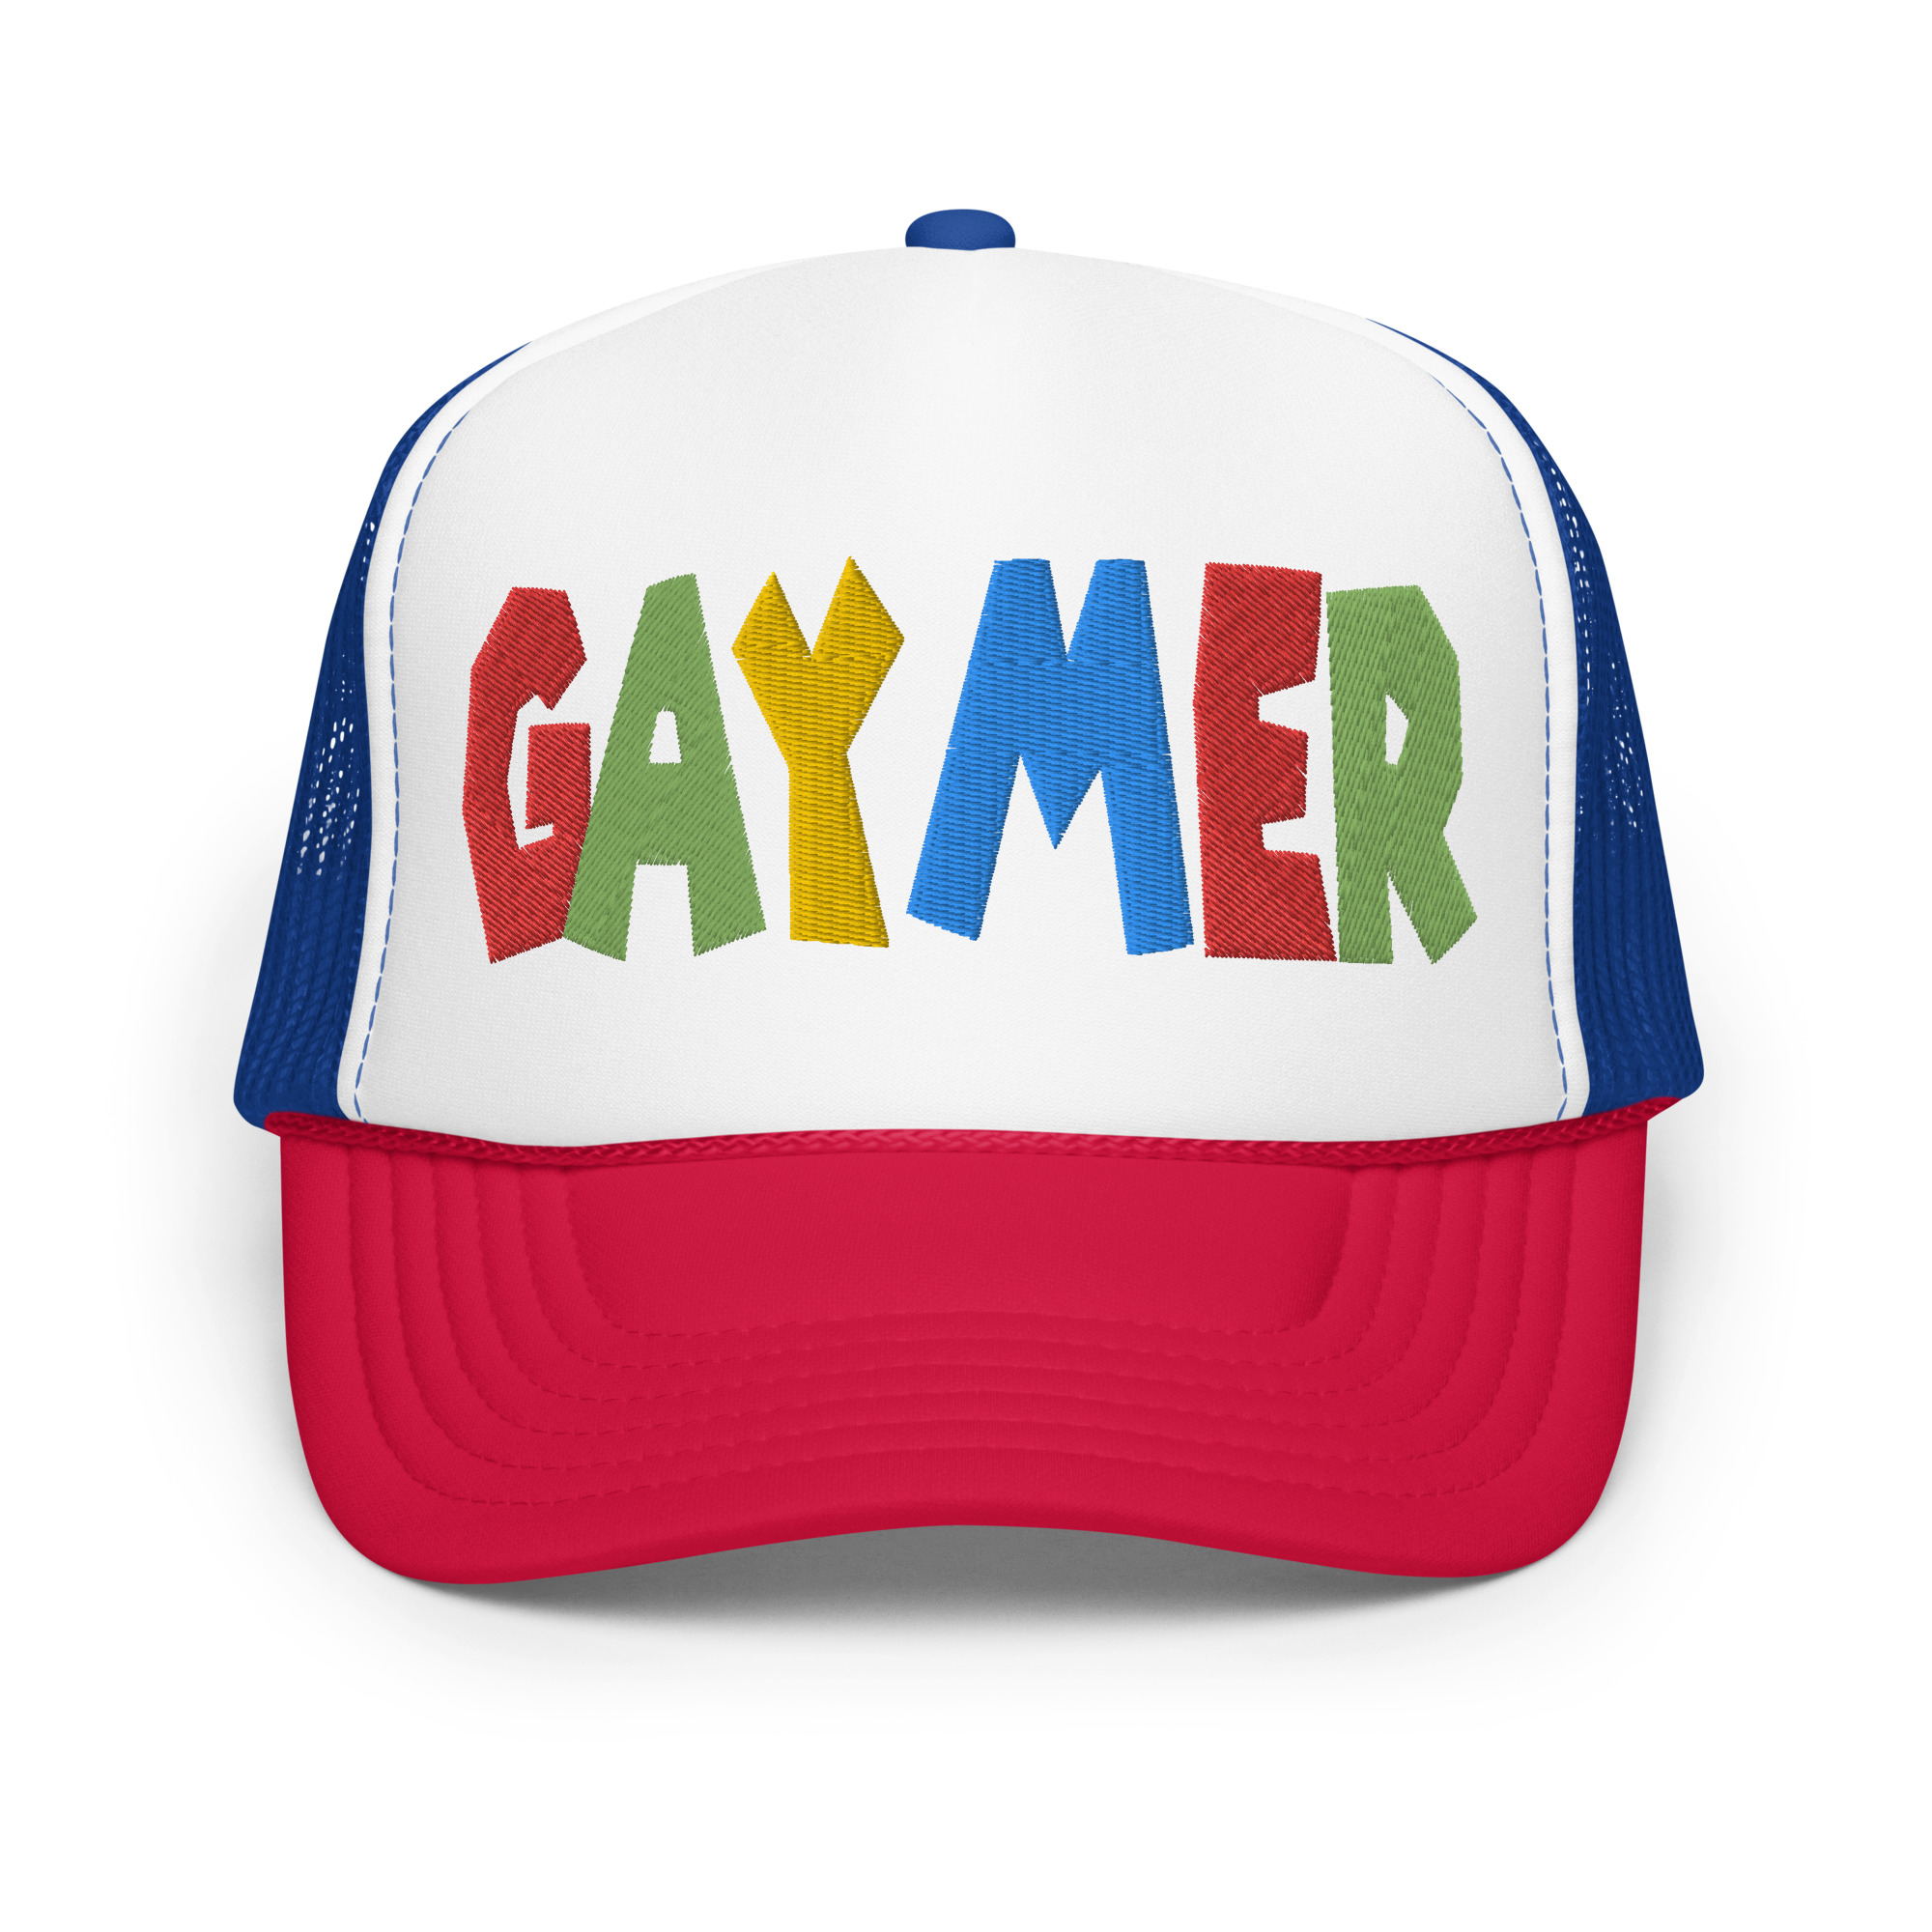 GAYMER - Foam trucker hat